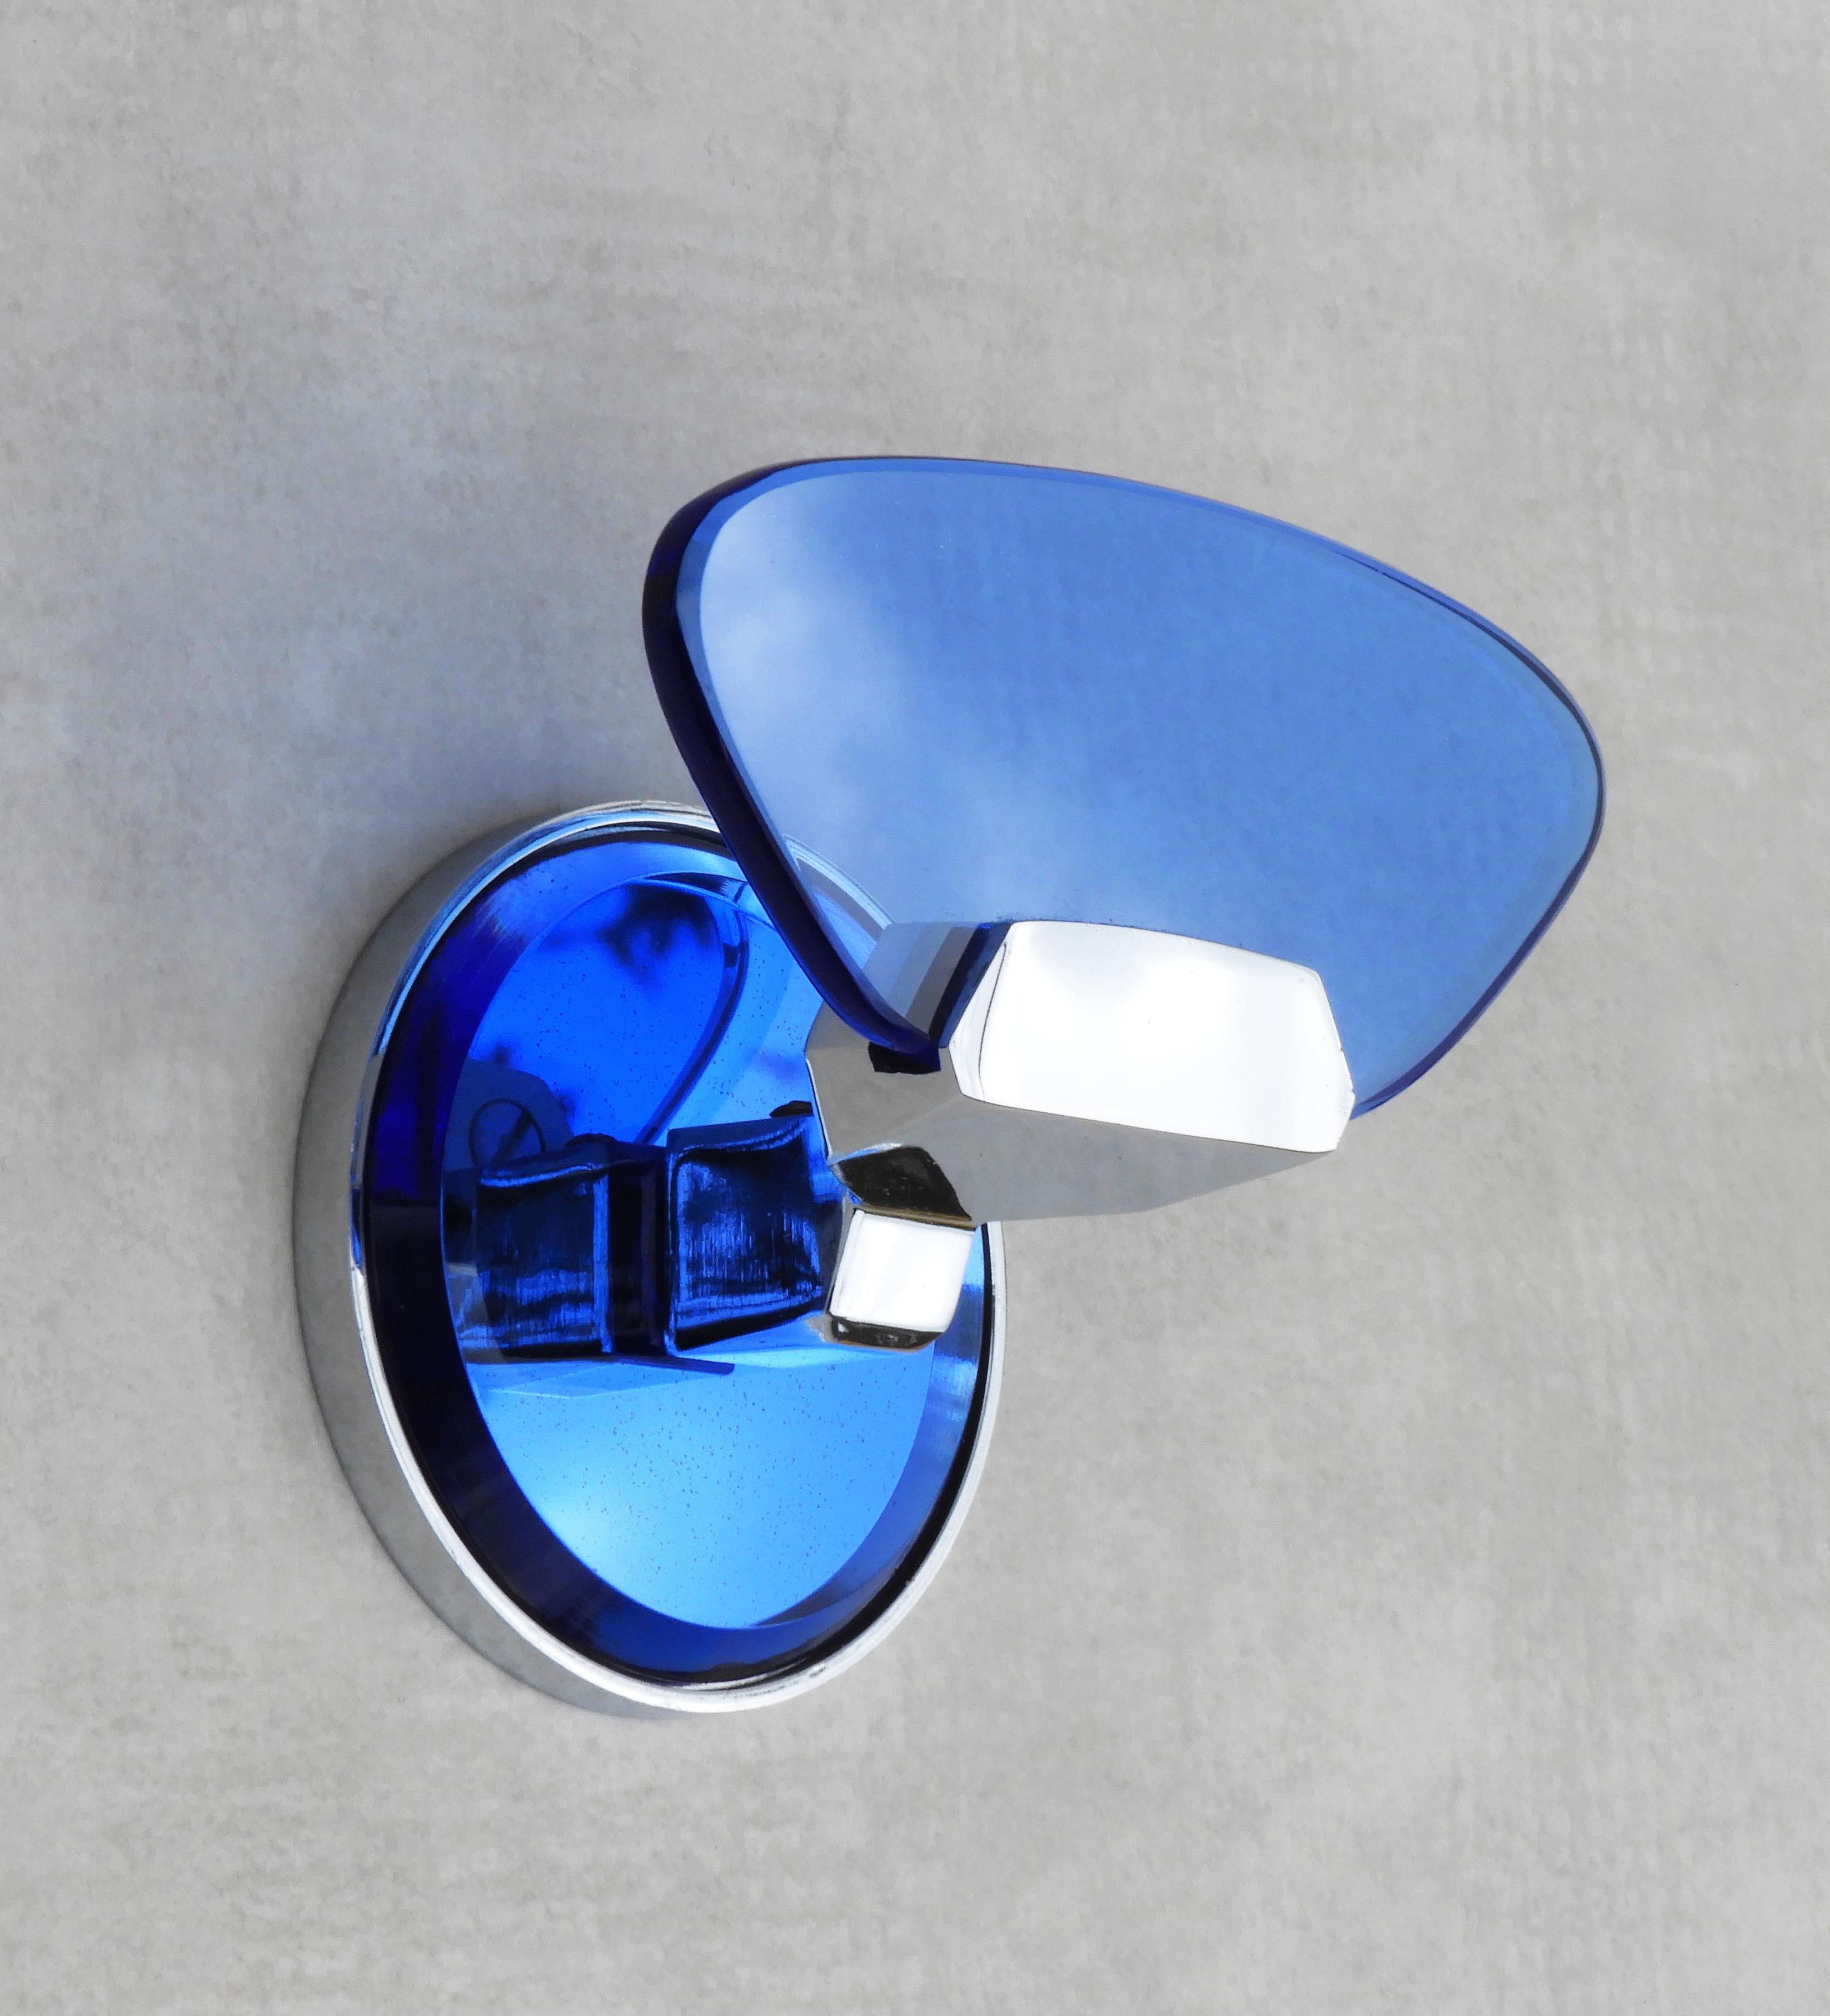 Garderobenhaken im italienischen Design von Veca C1970.   Attraktives blaues Glas auf einem verchromten Rahmen mit einer verspiegelten Rückwand. Teil einer Auswahl an Zubehör und Wandleuchten im gleichen Stil  - Bitte beachten Sie unsere anderen